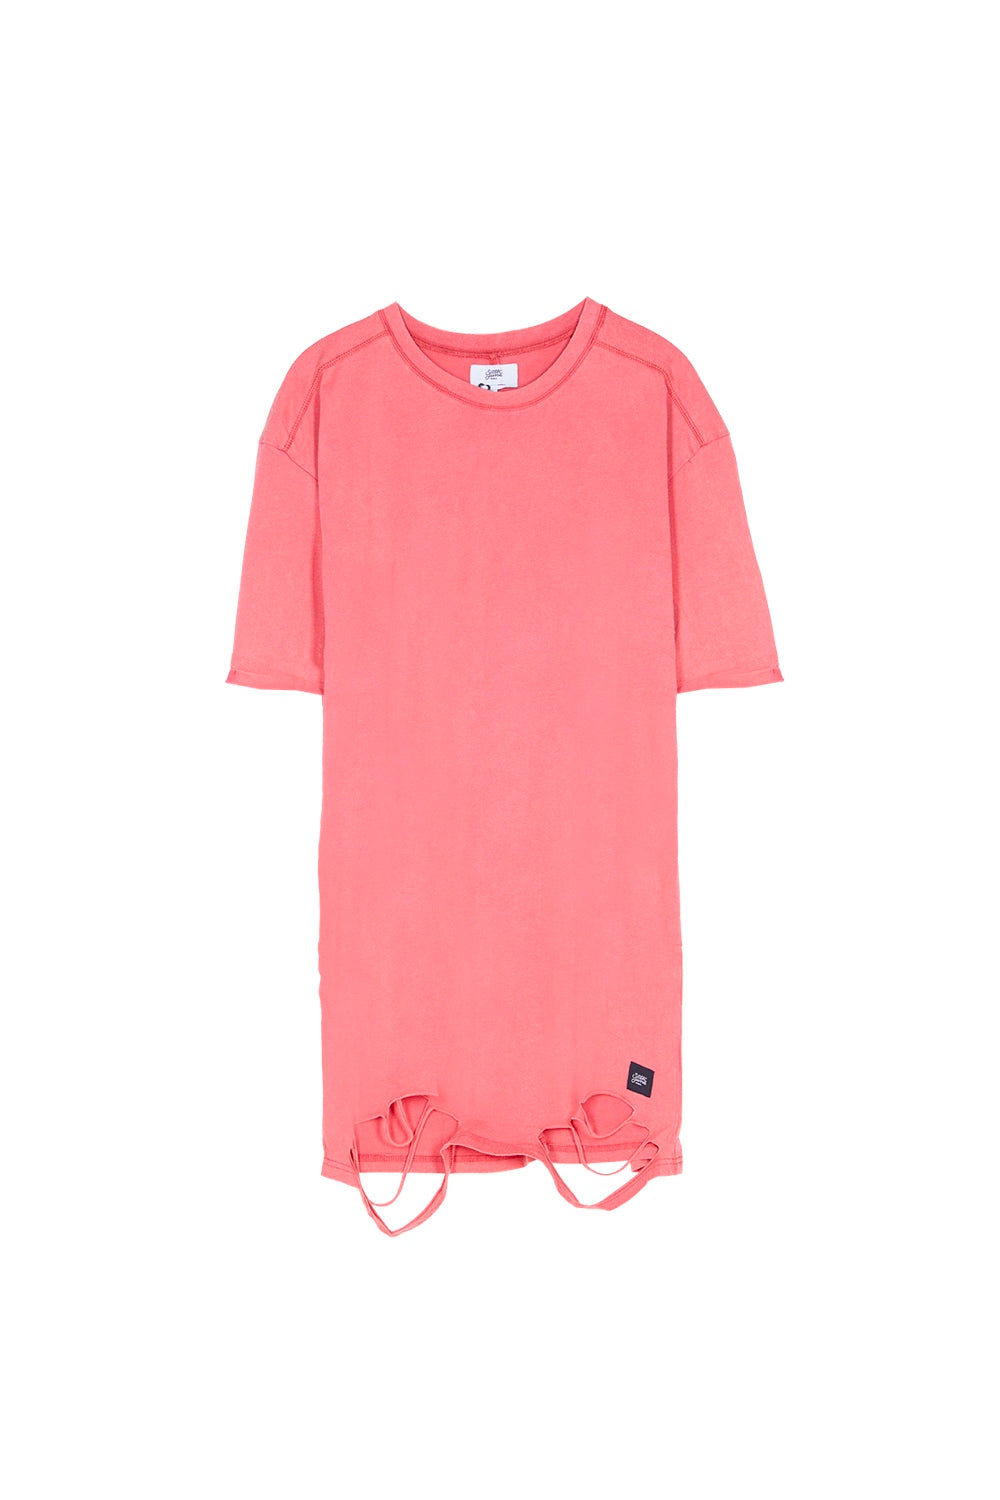 Sixth June - Robe t-shirt déchirée rose foncé